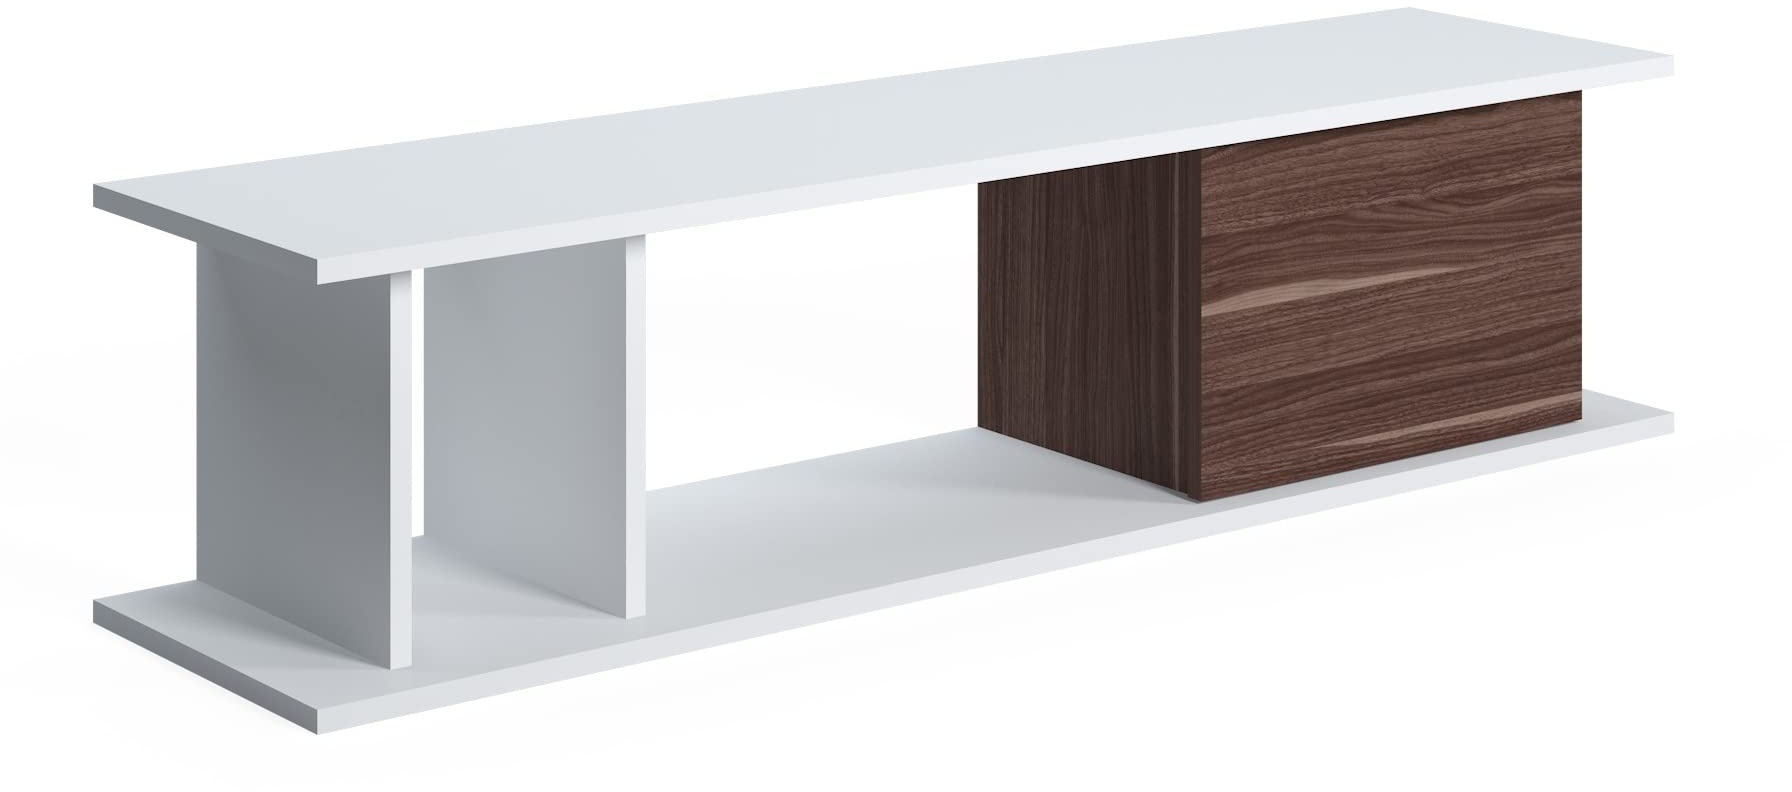 Amazon-Marke: Movian TV-Ständer Luur, Lowboard-Schrank, Mittel, 140 x 35 x 34 cm, Weiß-Walnuss